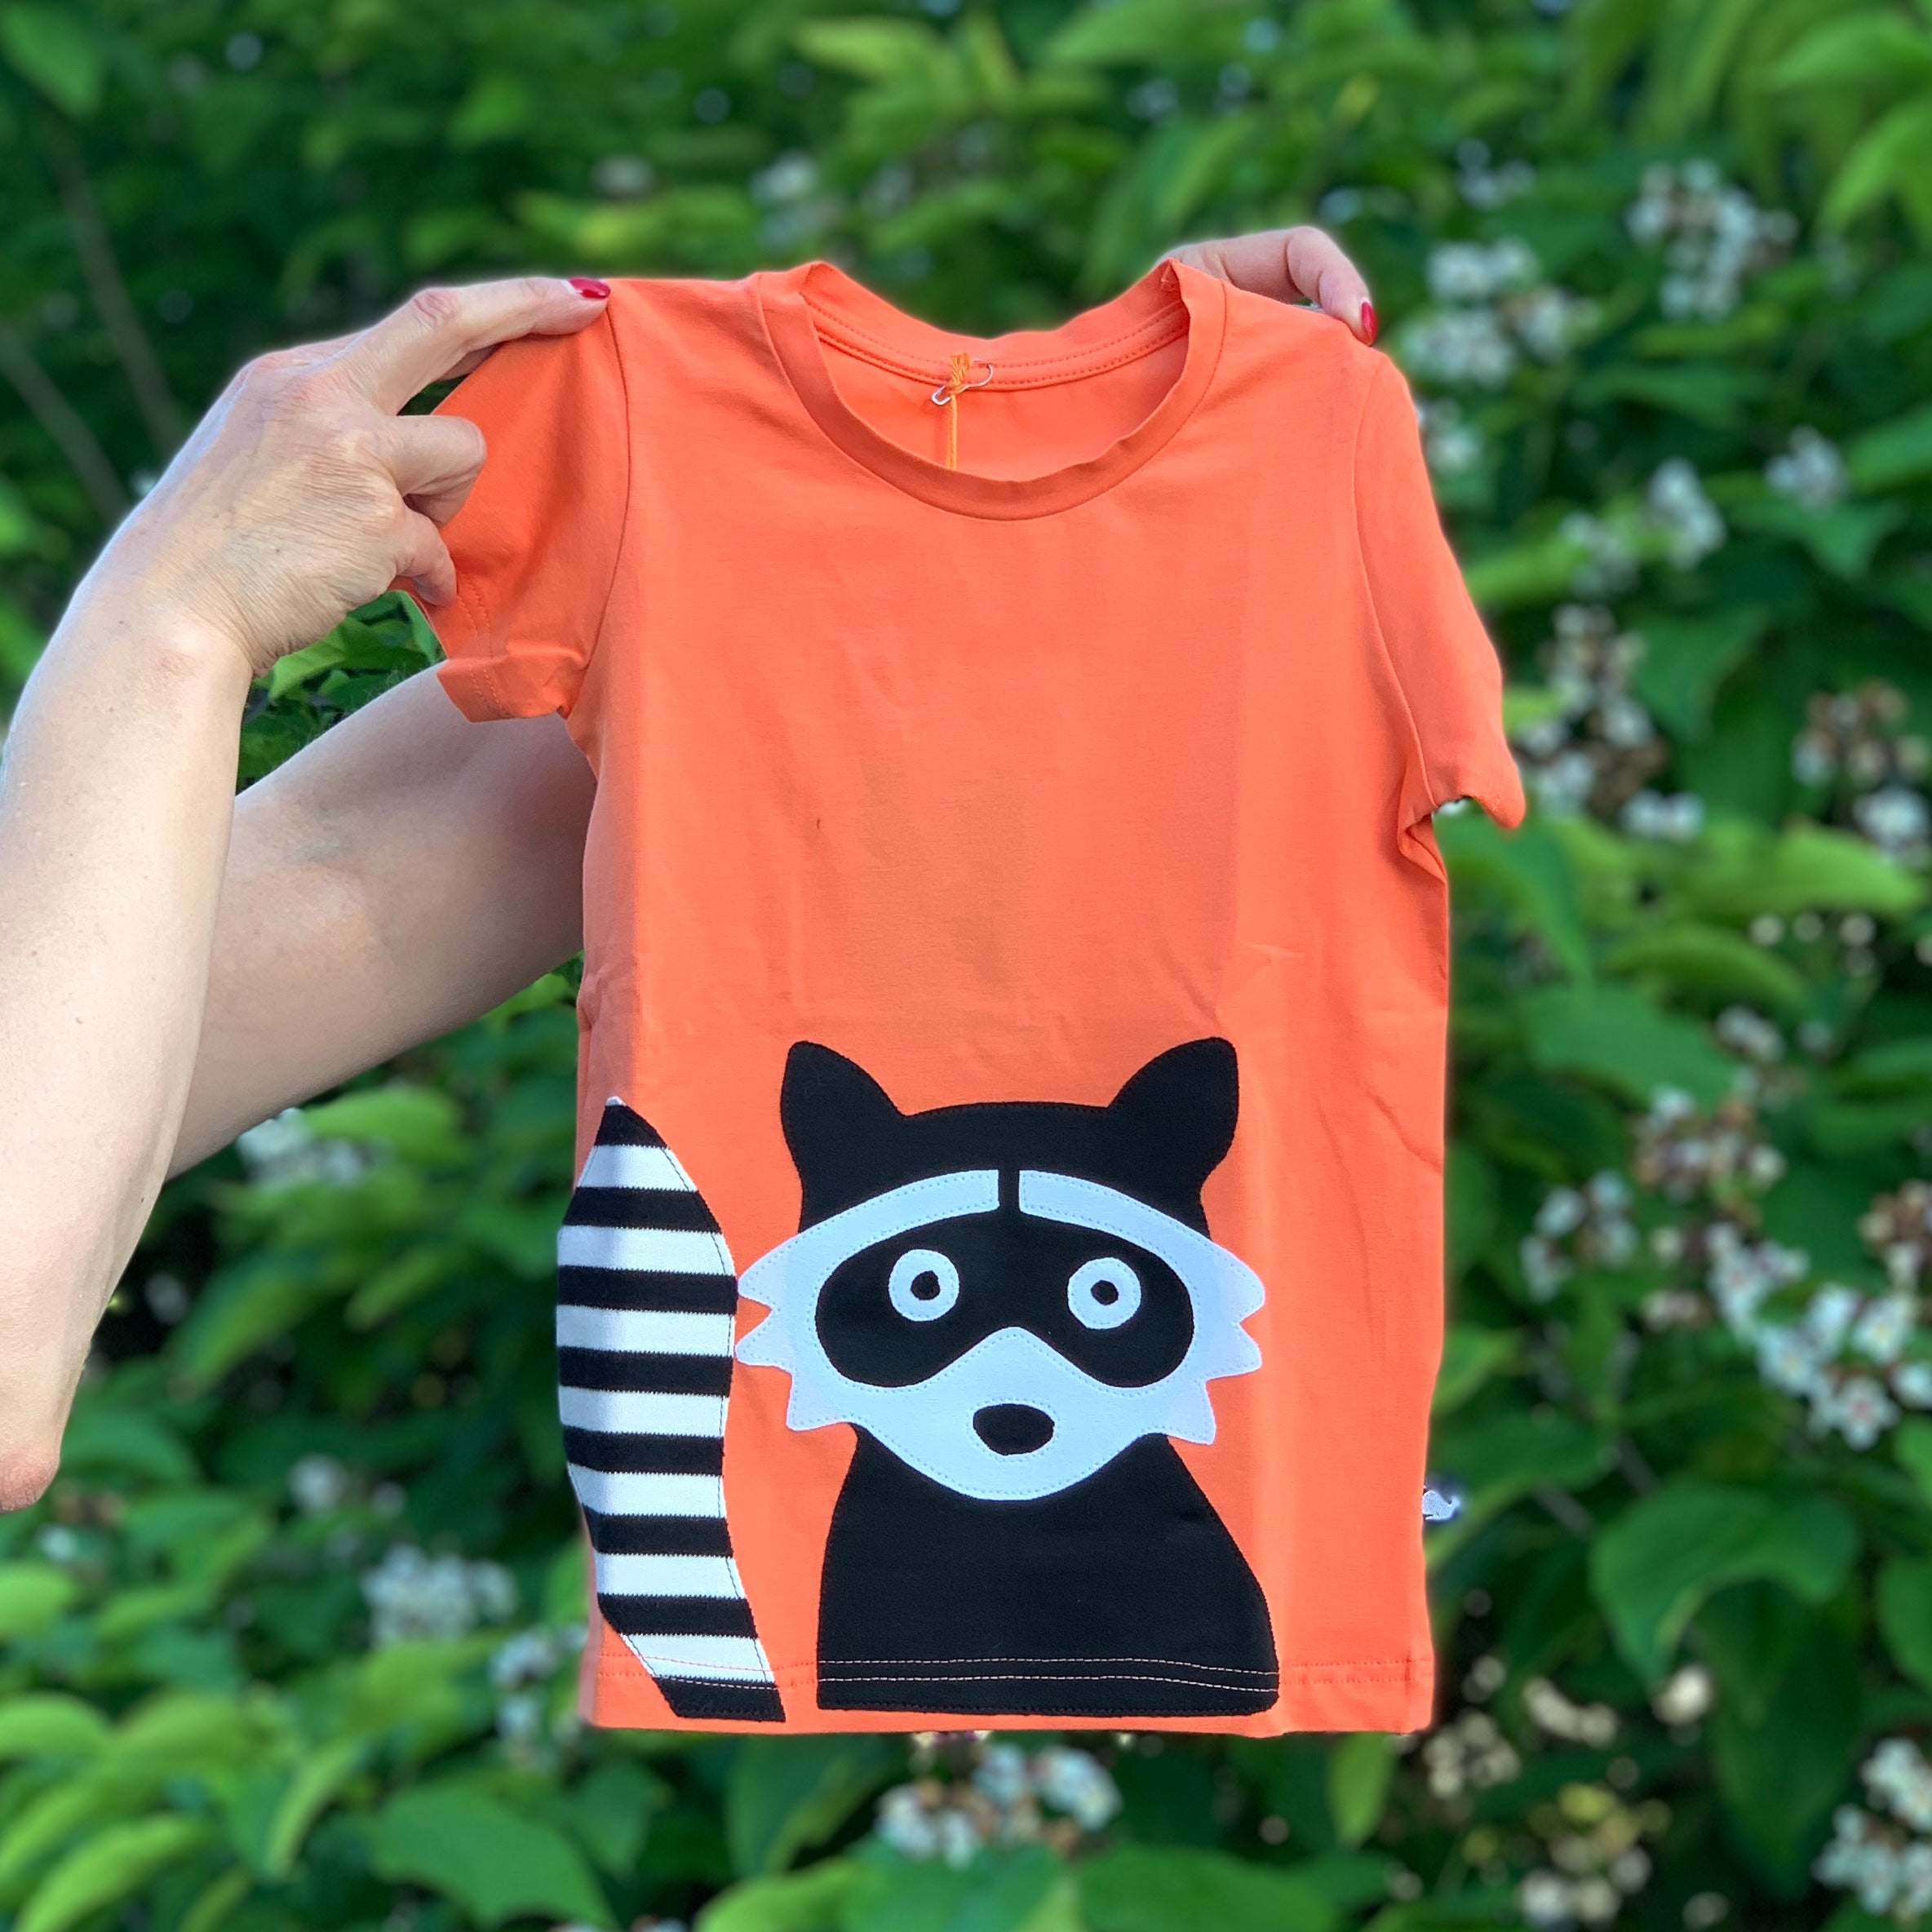 – Kinder Biobaumwolle internaht T-Shirt 100% Waschbär, mit